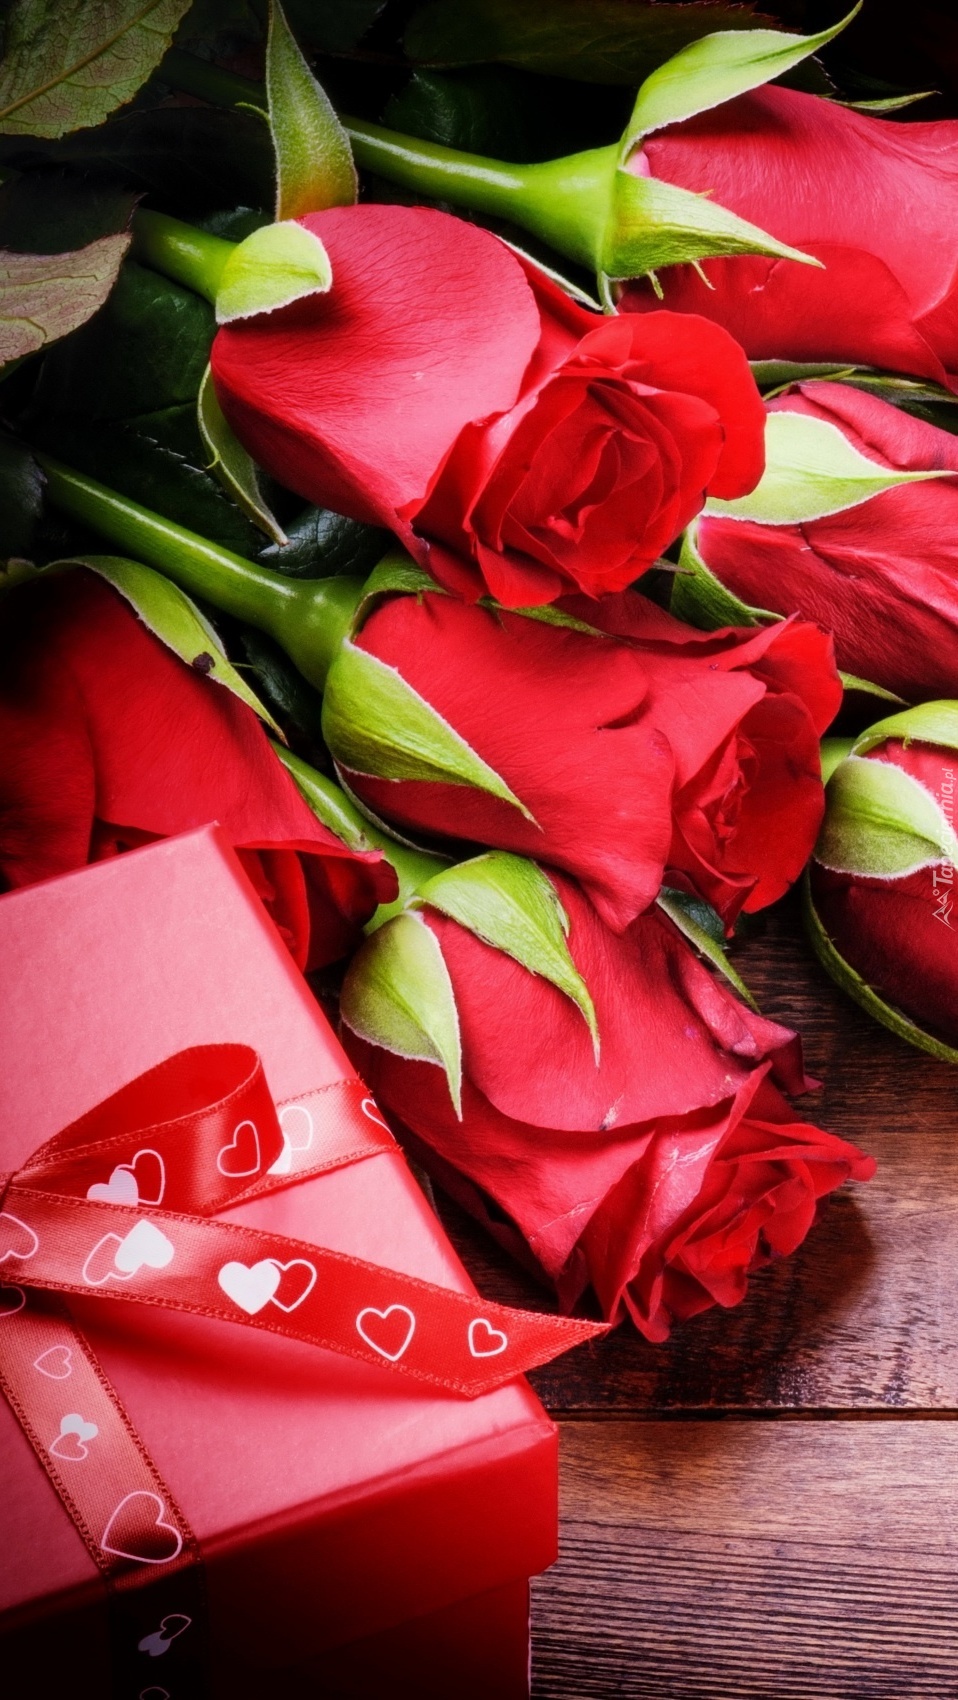 Pudełko z prezentem i czerwone róże na desce